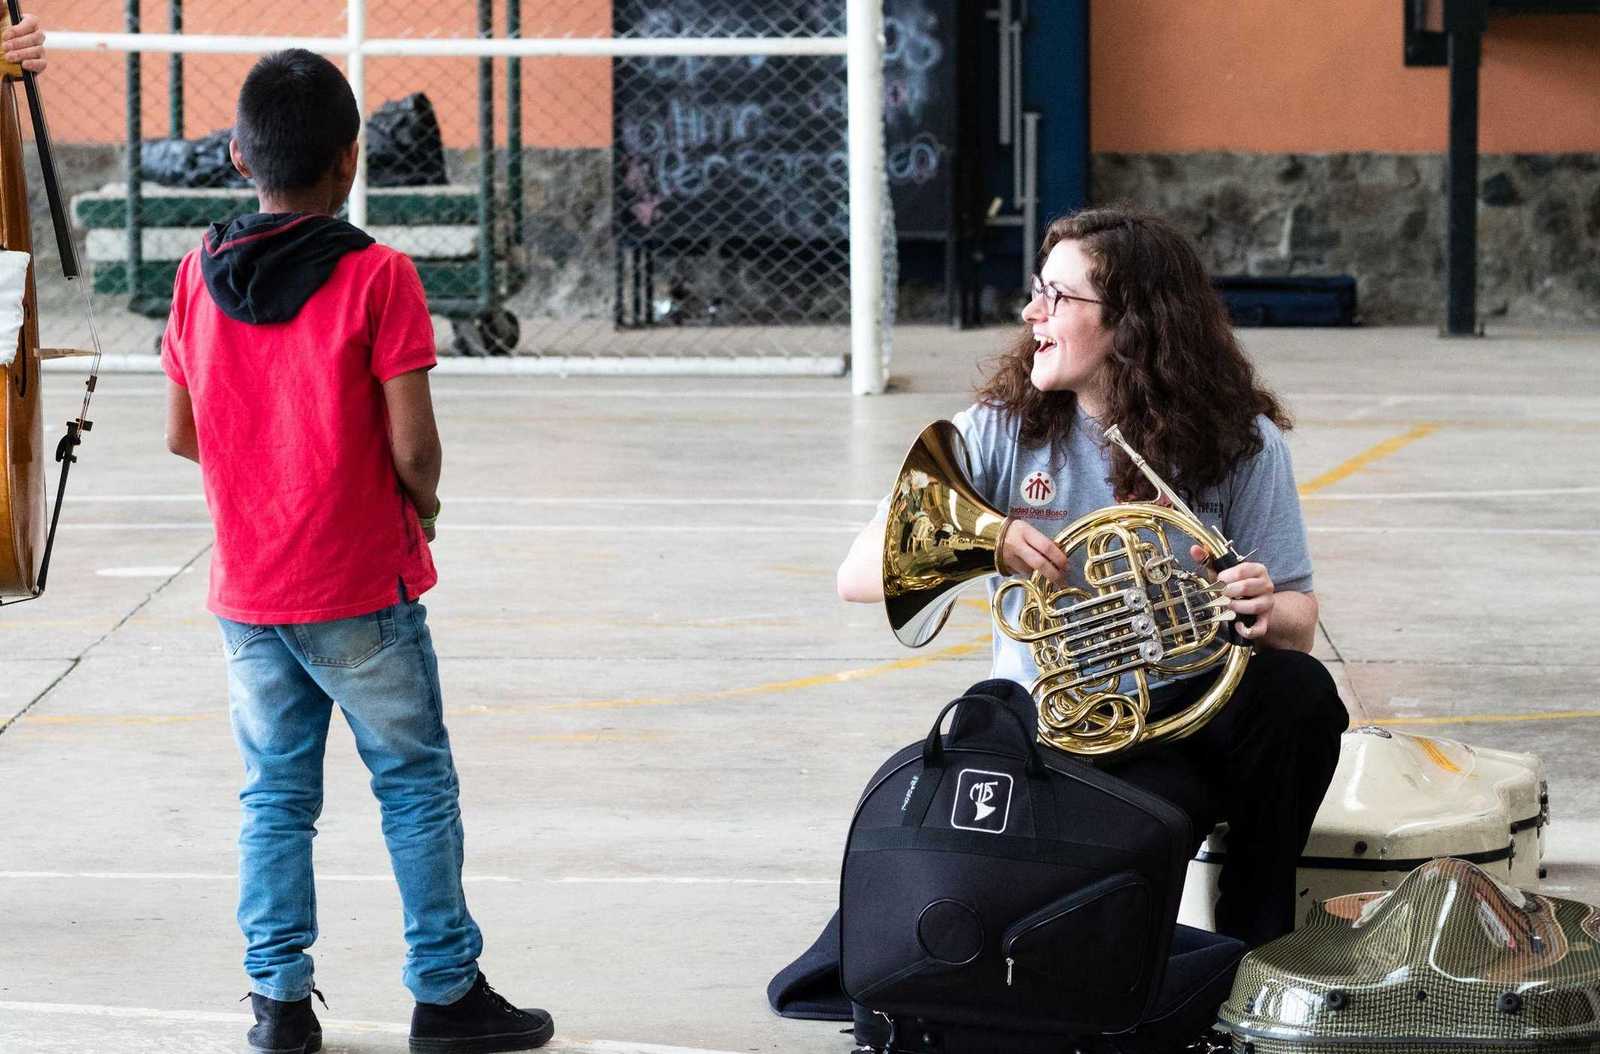 Musikerin des Beethoven Orchester zeigt einem jungen wie man Horn spielt